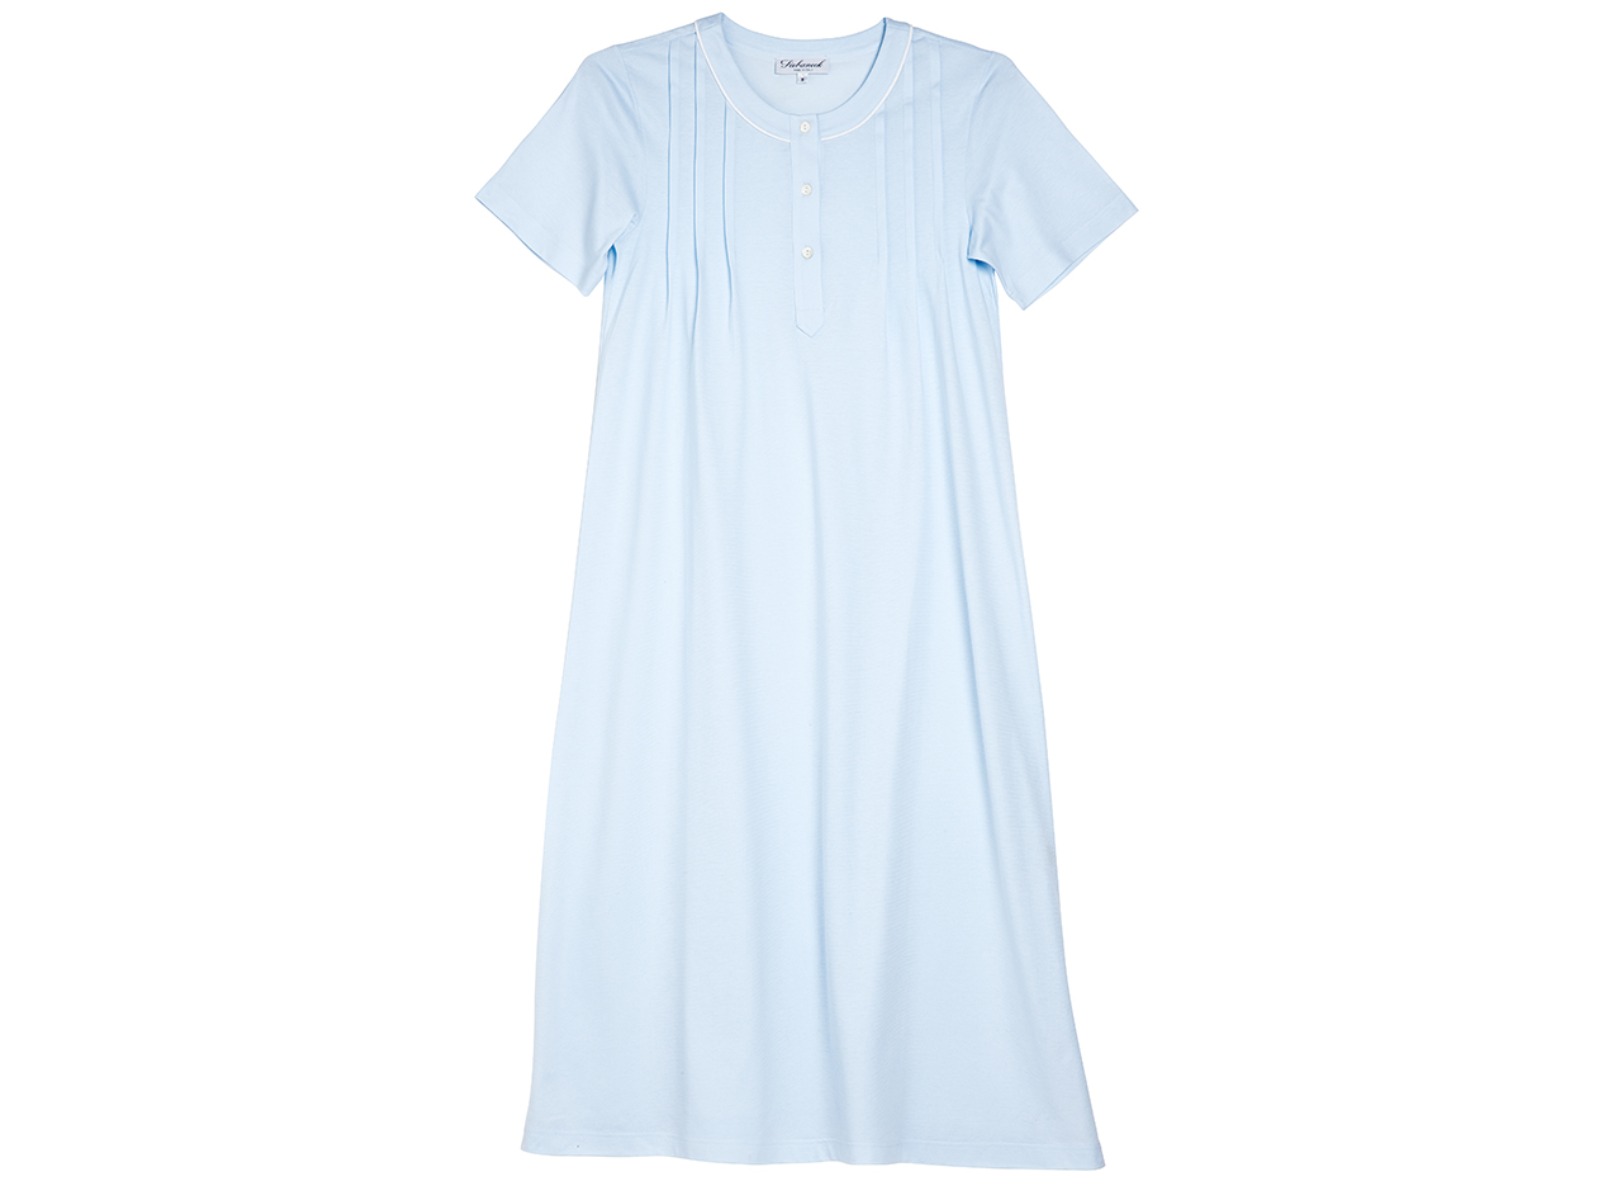 Siebaneck, i pigiami artigianali italiani: - Donna - mod. 5 DONNA azzurro